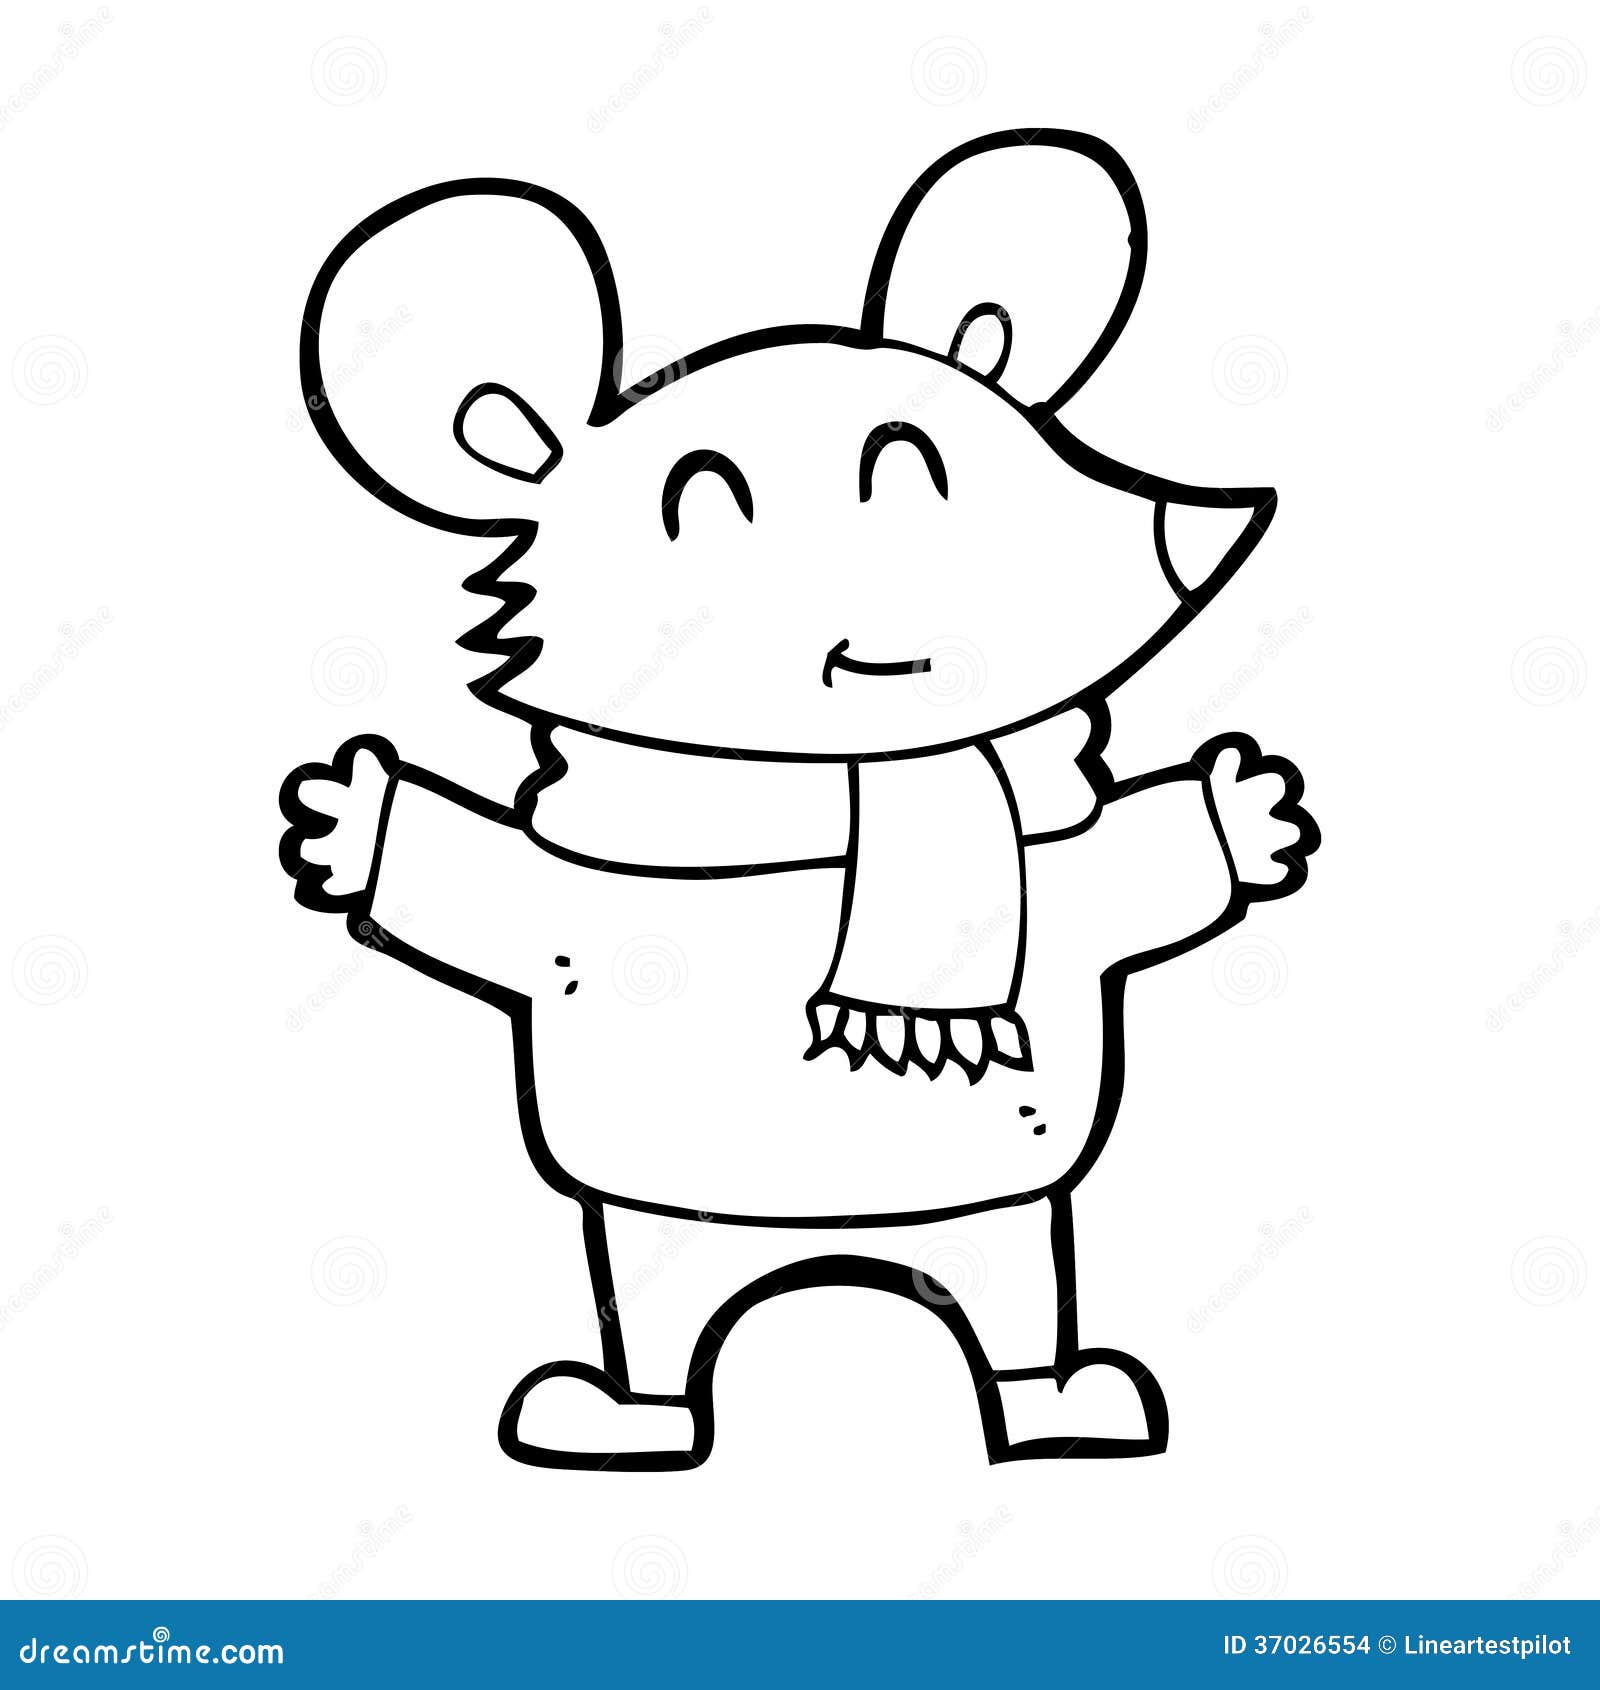 Cartoon mouse stock illustration. Illustration of cheerful - 37026554